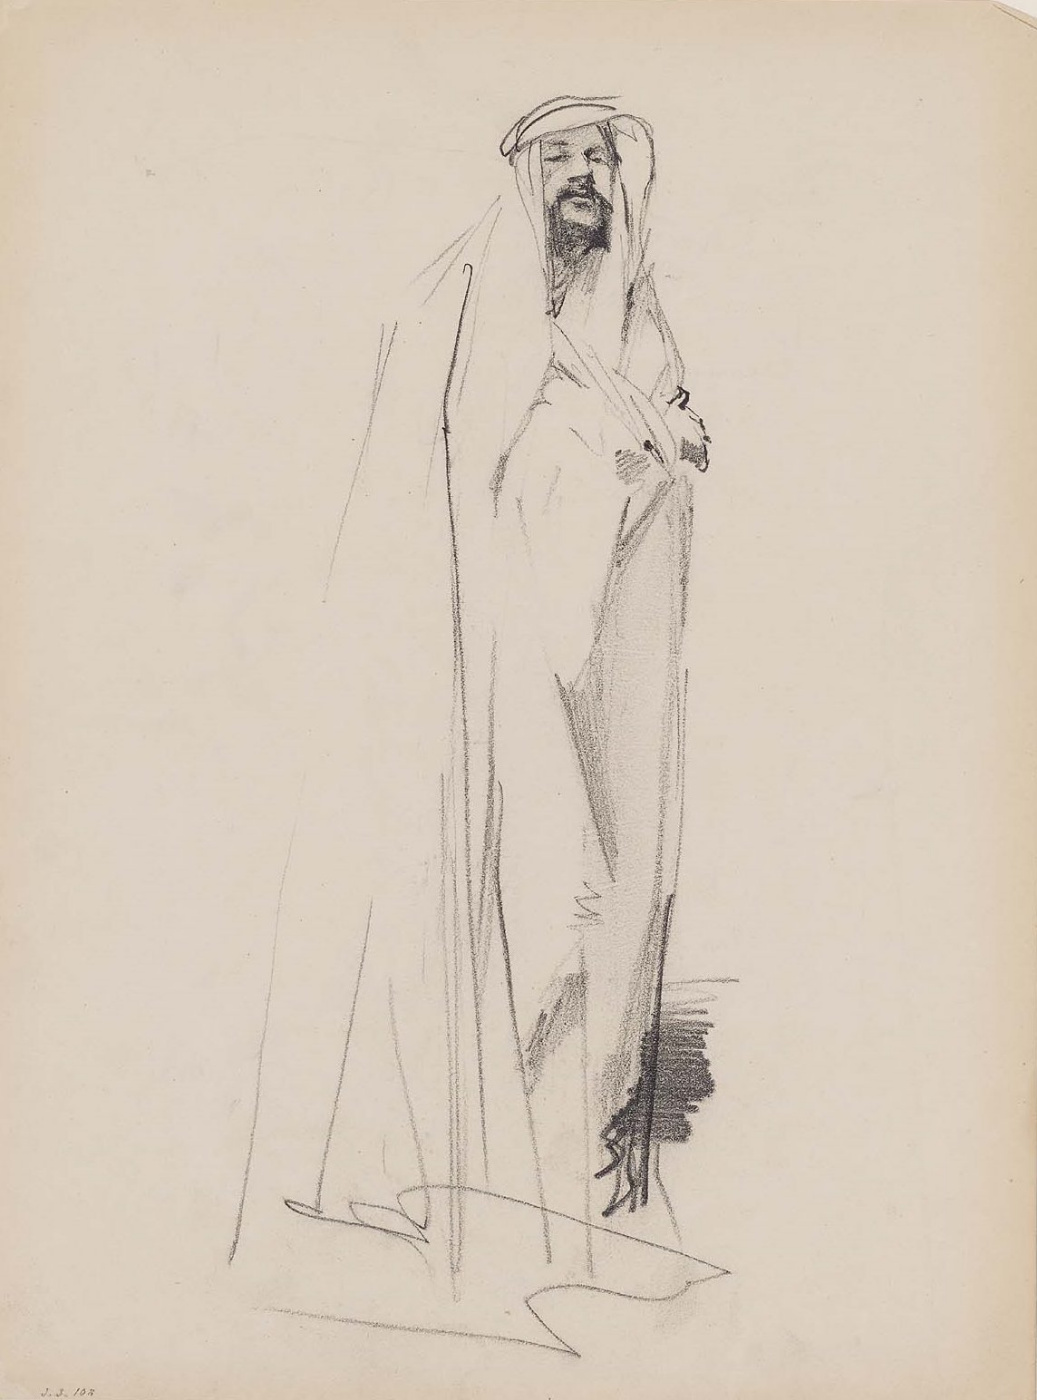 John Singer Sargent. A sketch of Arab